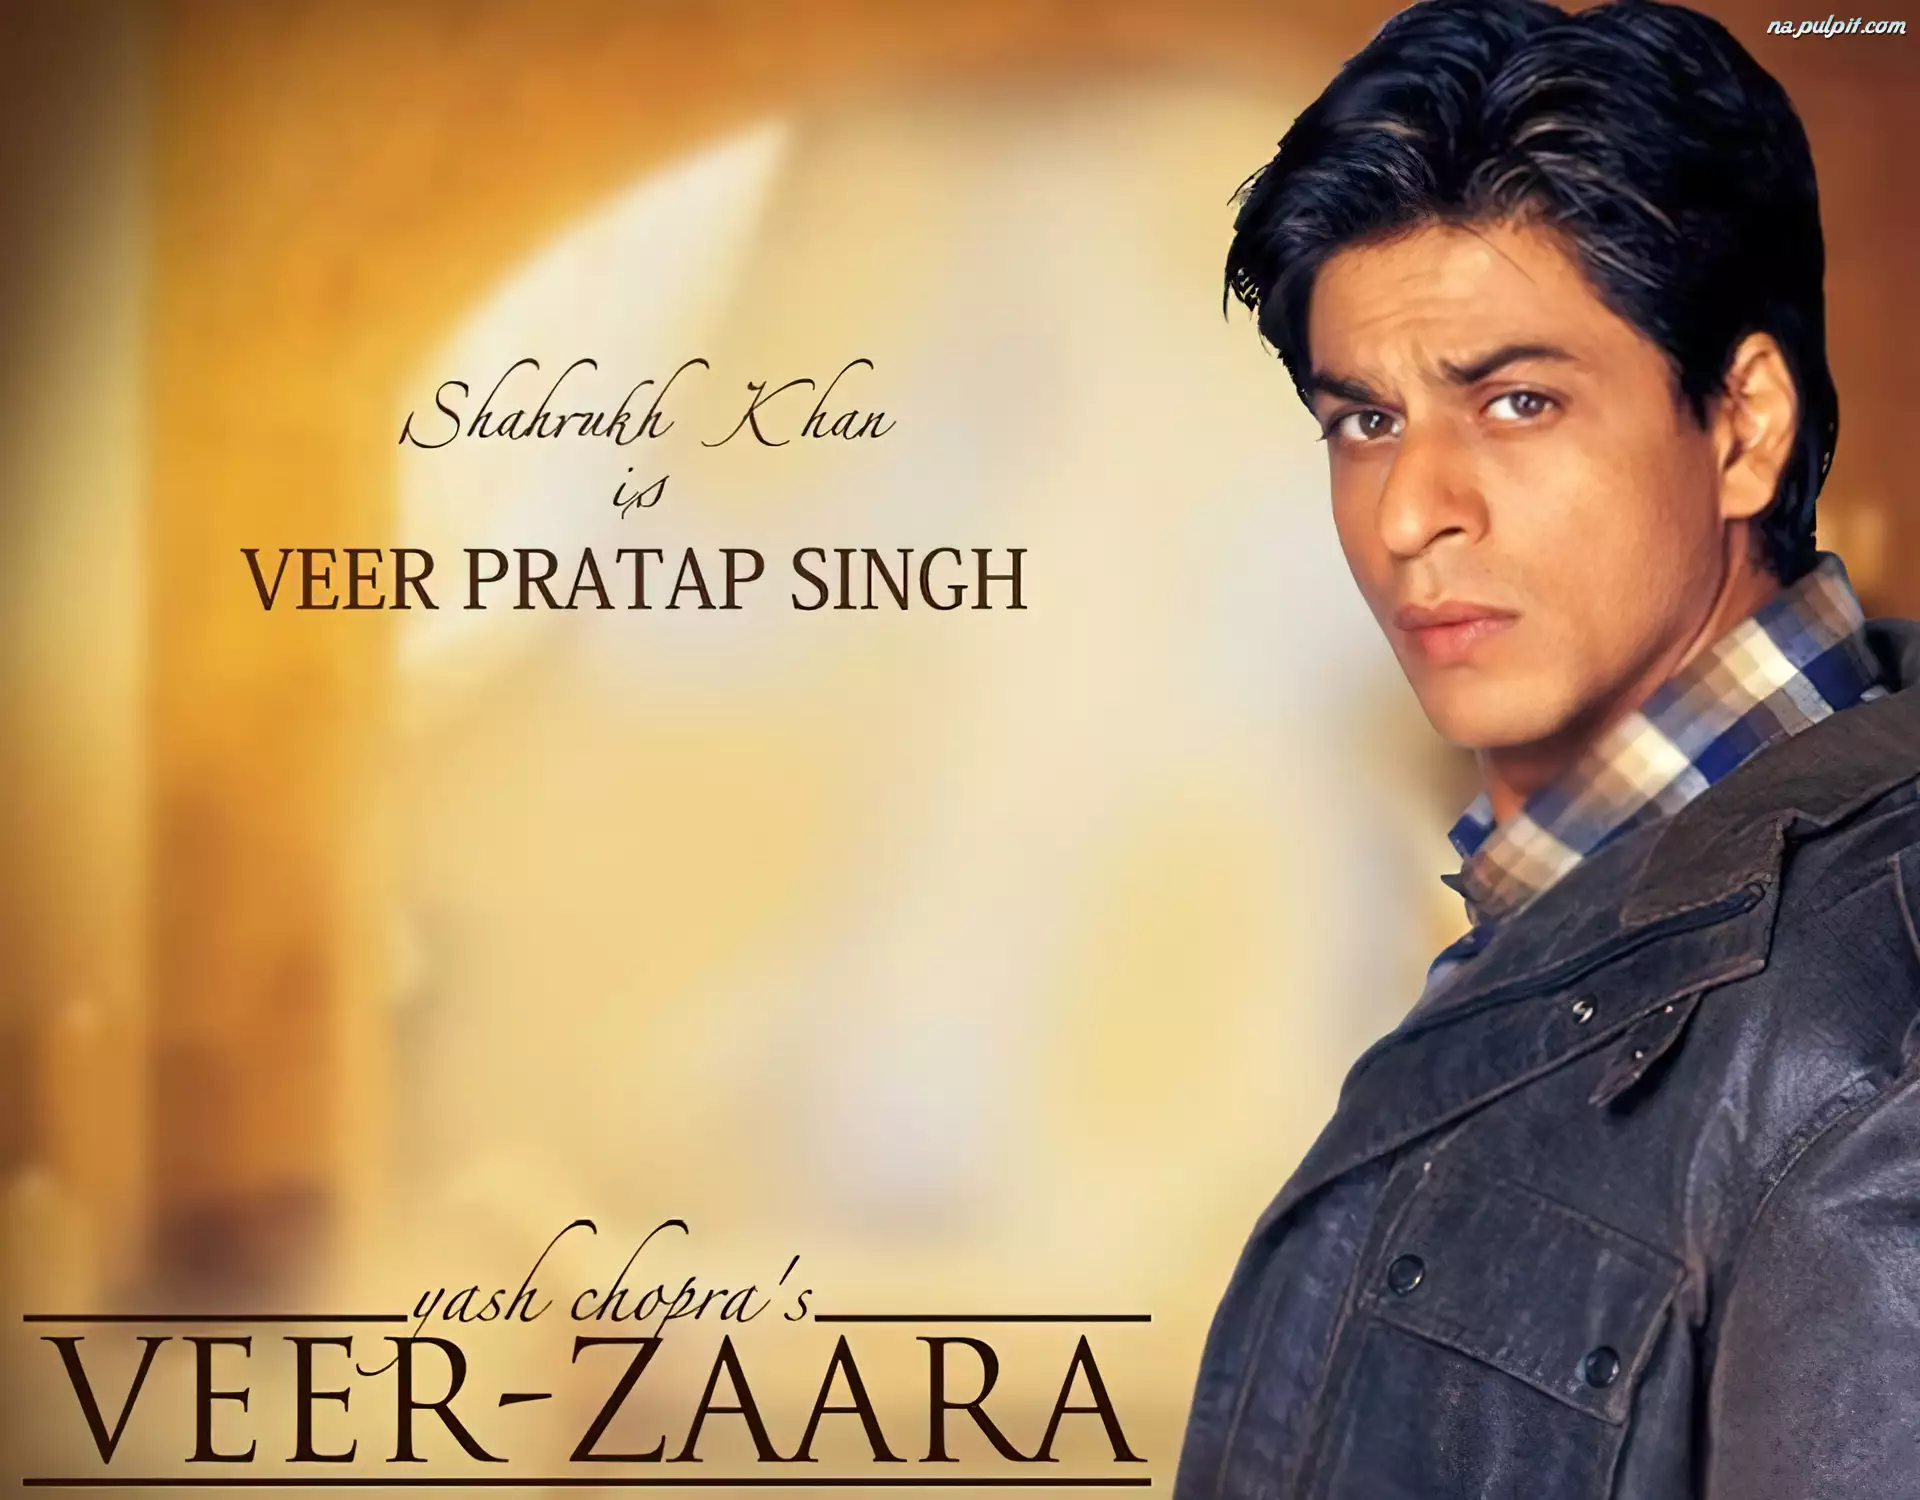 Veer Zaara, Shahrukh Khan